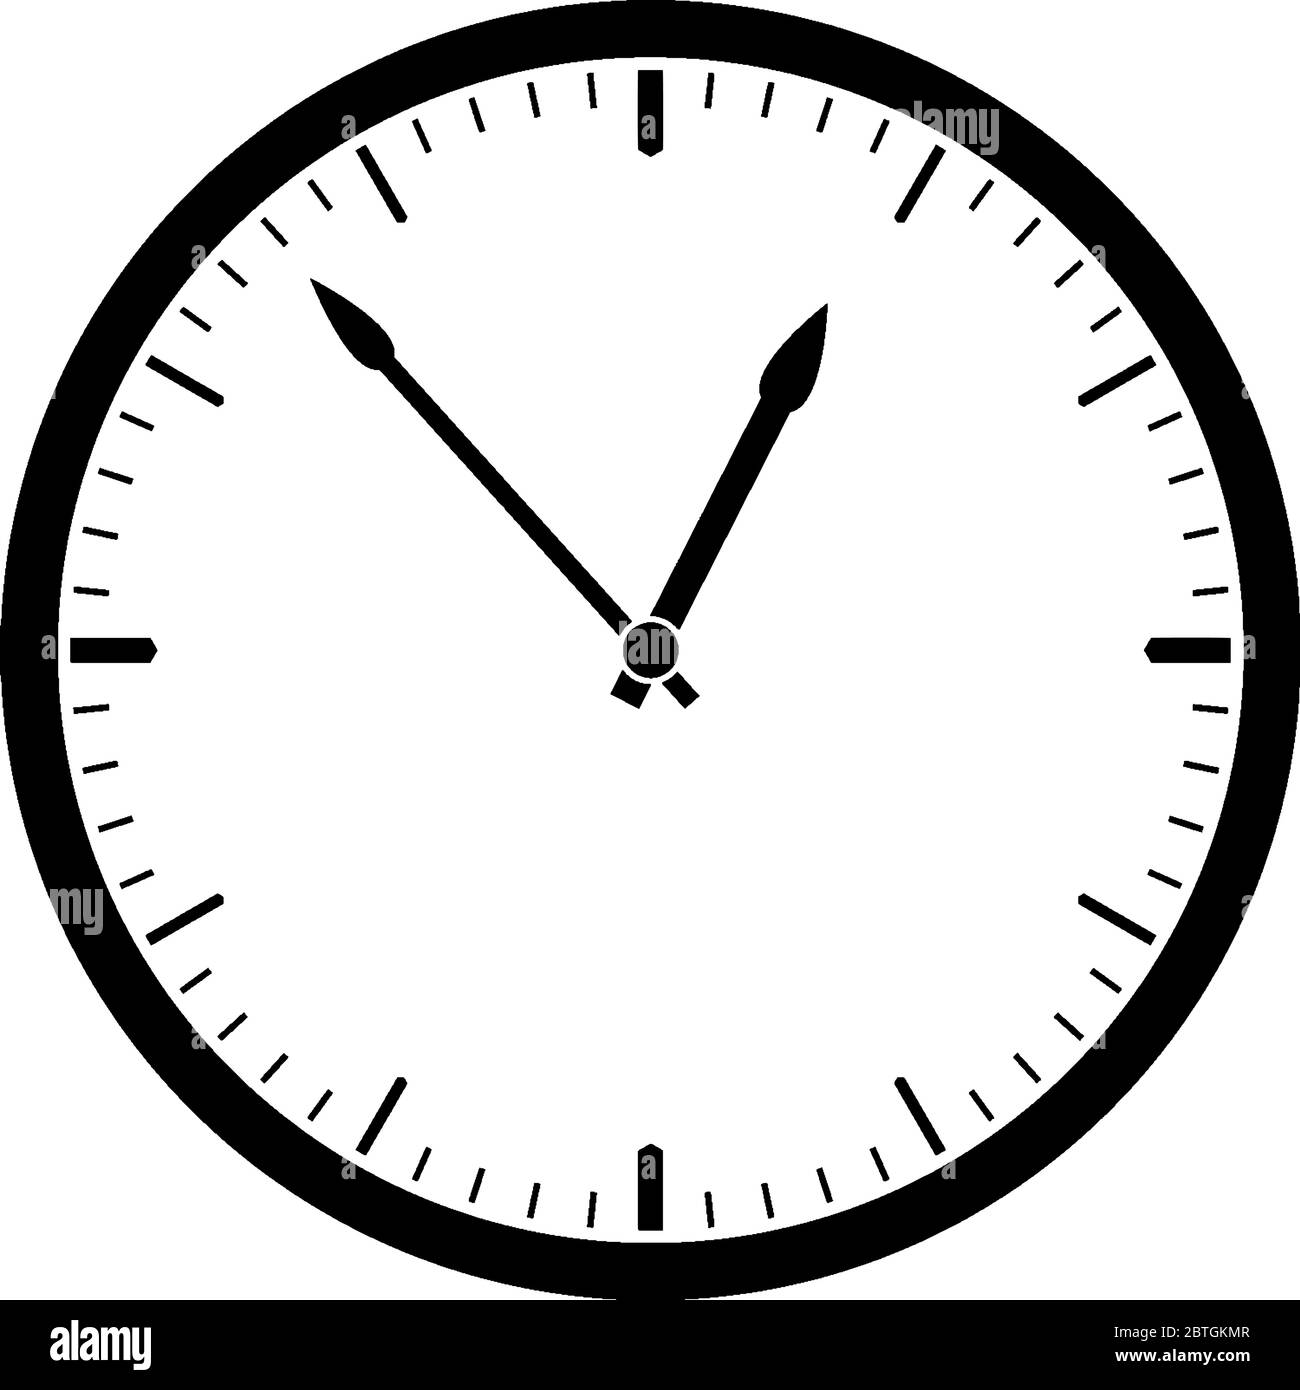 Horloge murale de 12 heures avec la main de l'heure et des minutes,  affichant l'heure 12:53, dessin de ligne vintage ou illustration de gravure  Image Vectorielle Stock - Alamy